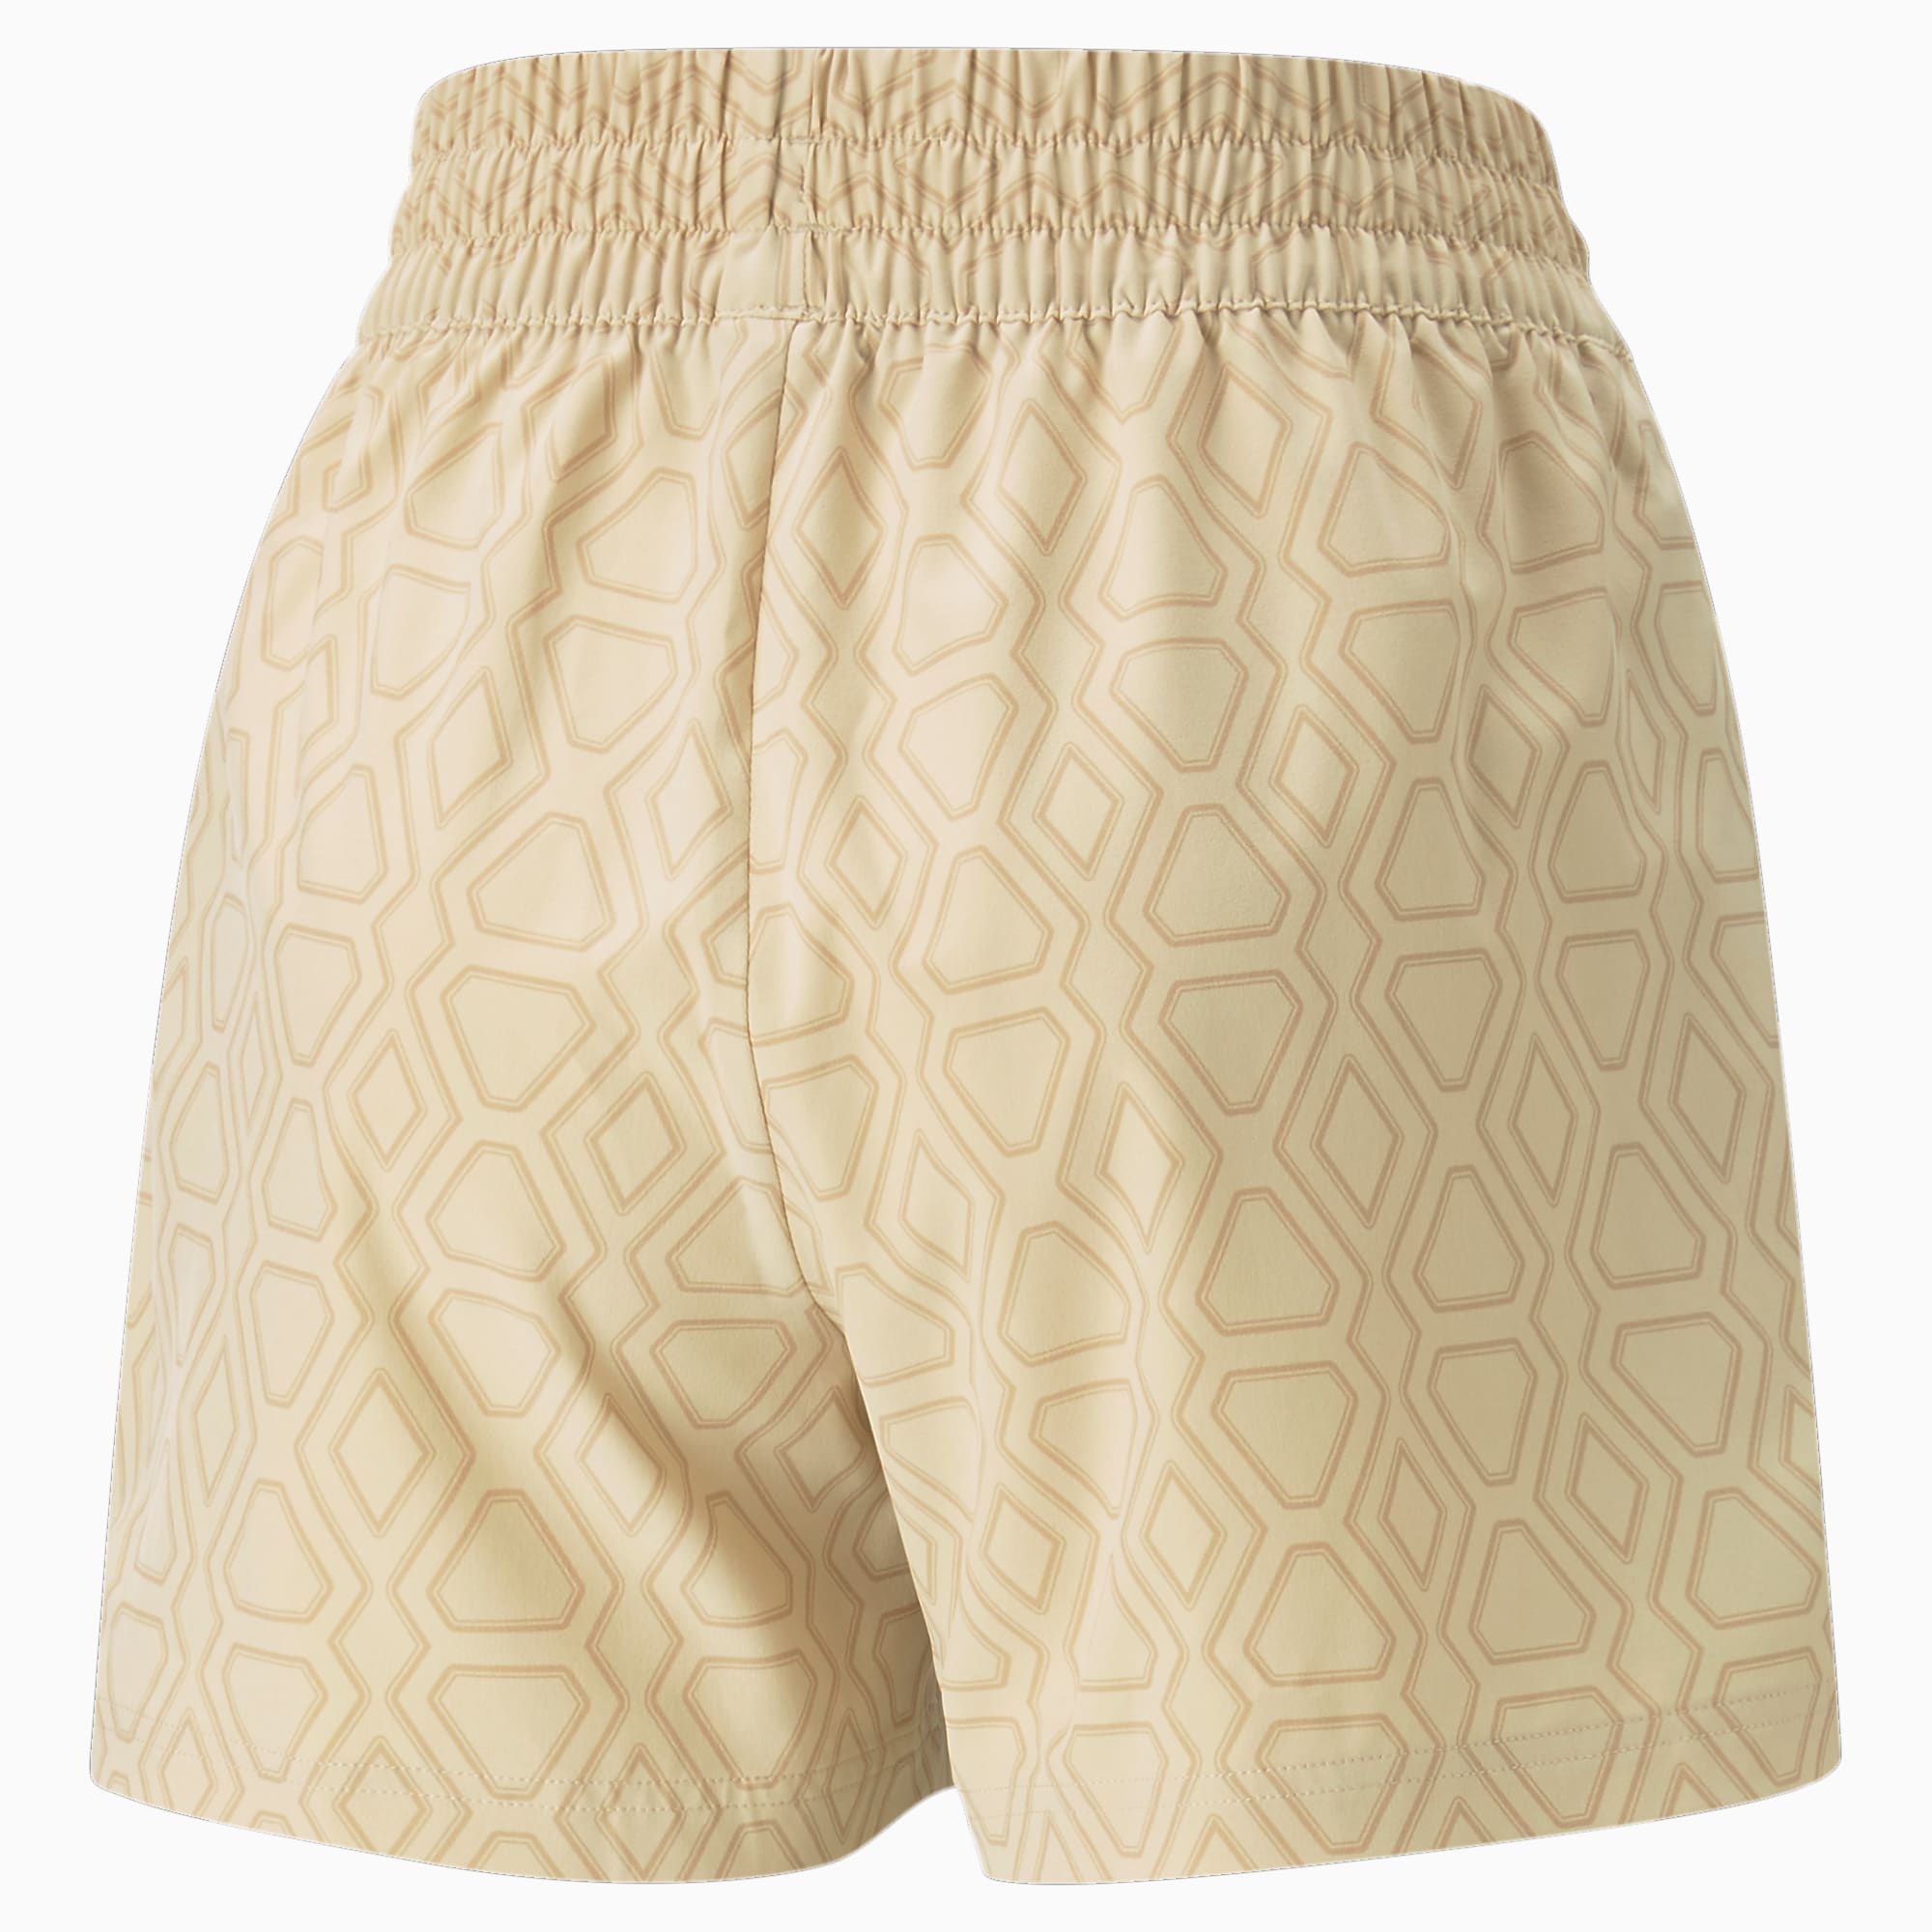 PUMA Shorts Para Mujer T7 Woven, 21